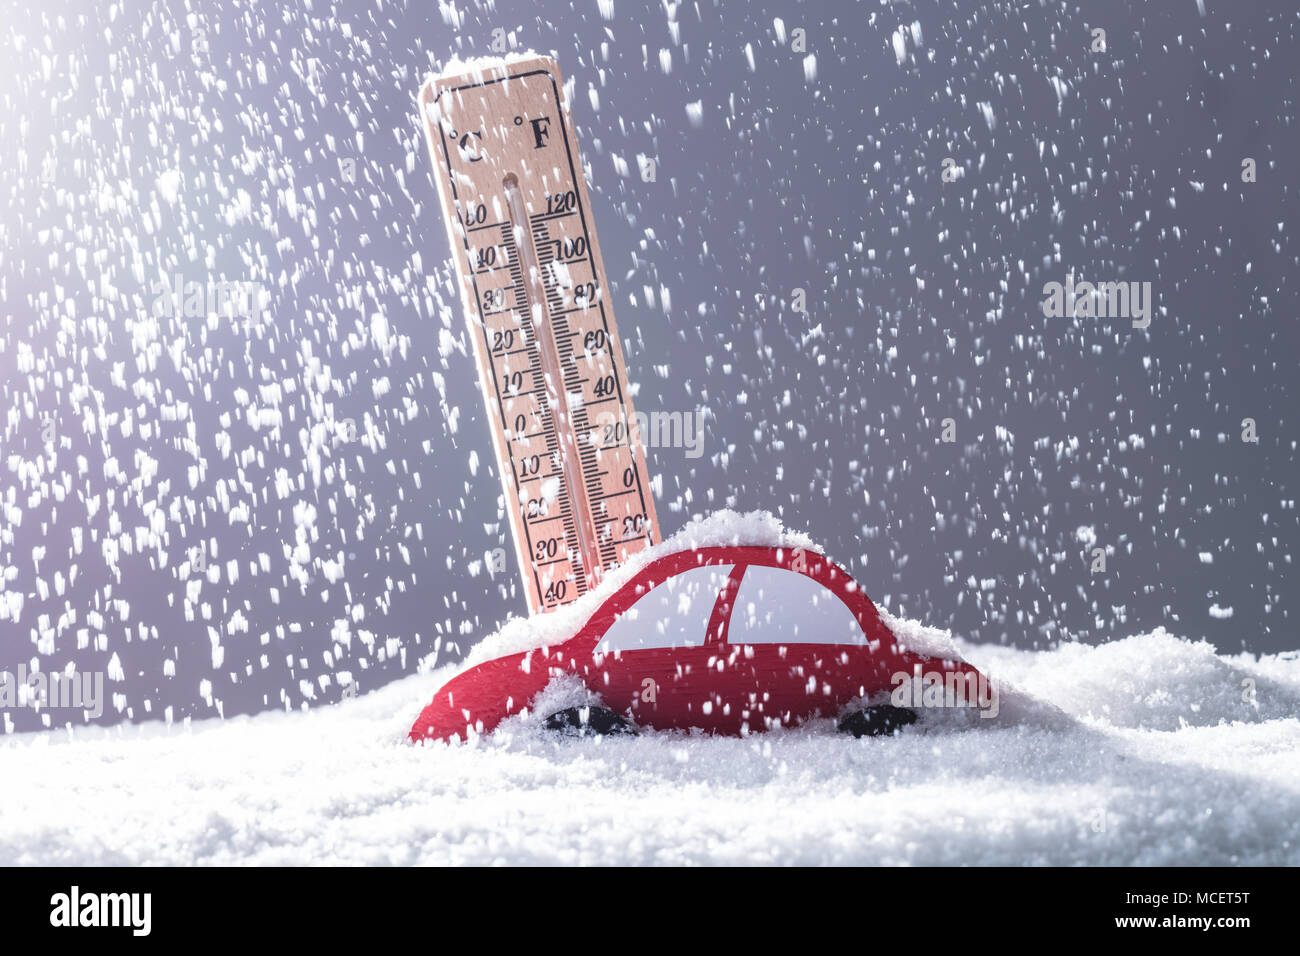 Voiture rouge couverte de neige en face de thermomètre au cours de fortes chutes de neige Banque D'Images